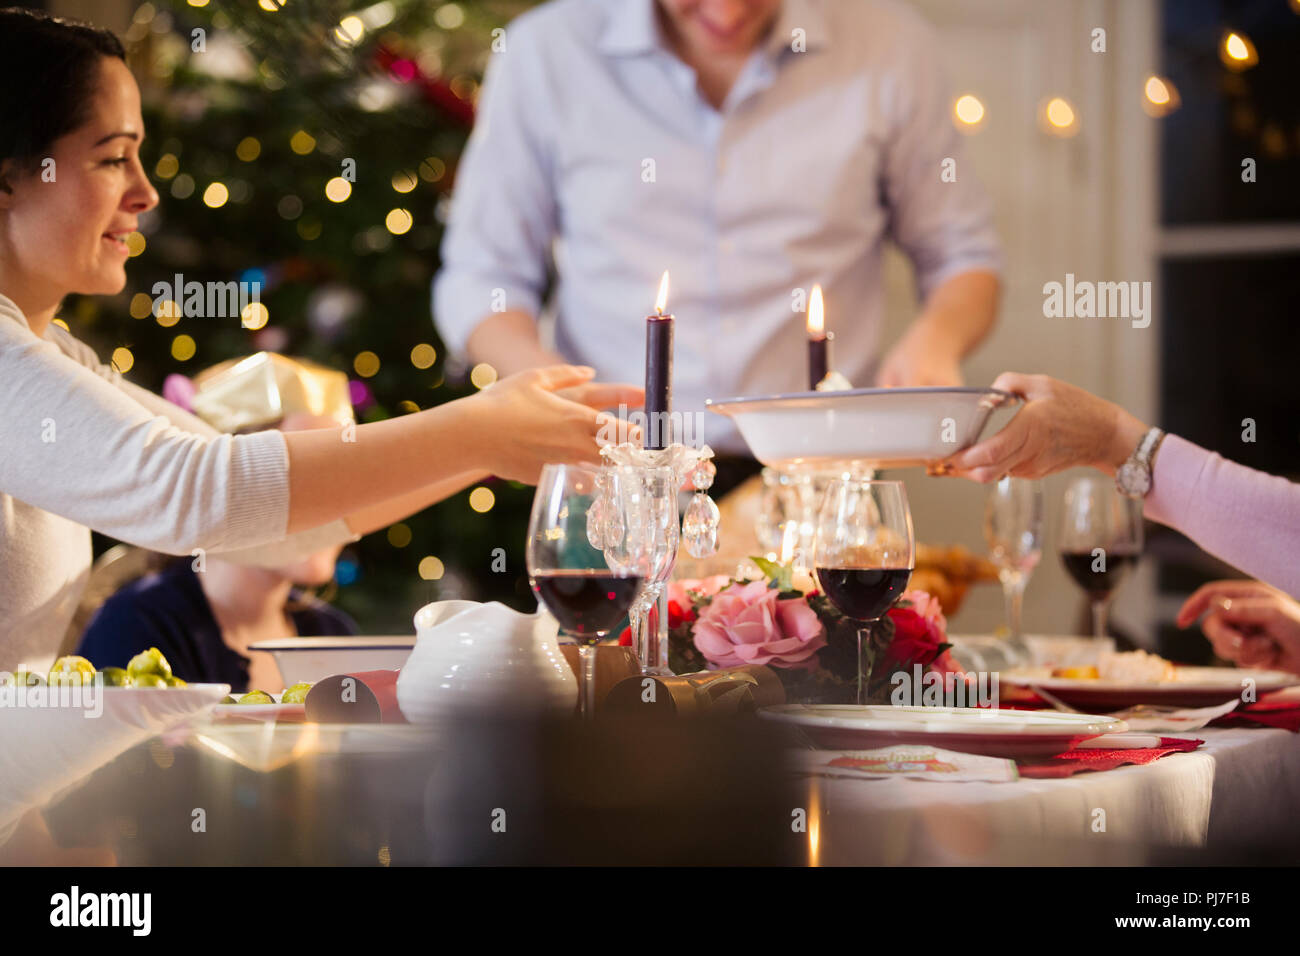 En passant, l'alimentation de la famille bénéficiant d'un repas de Noël aux chandelles Banque D'Images